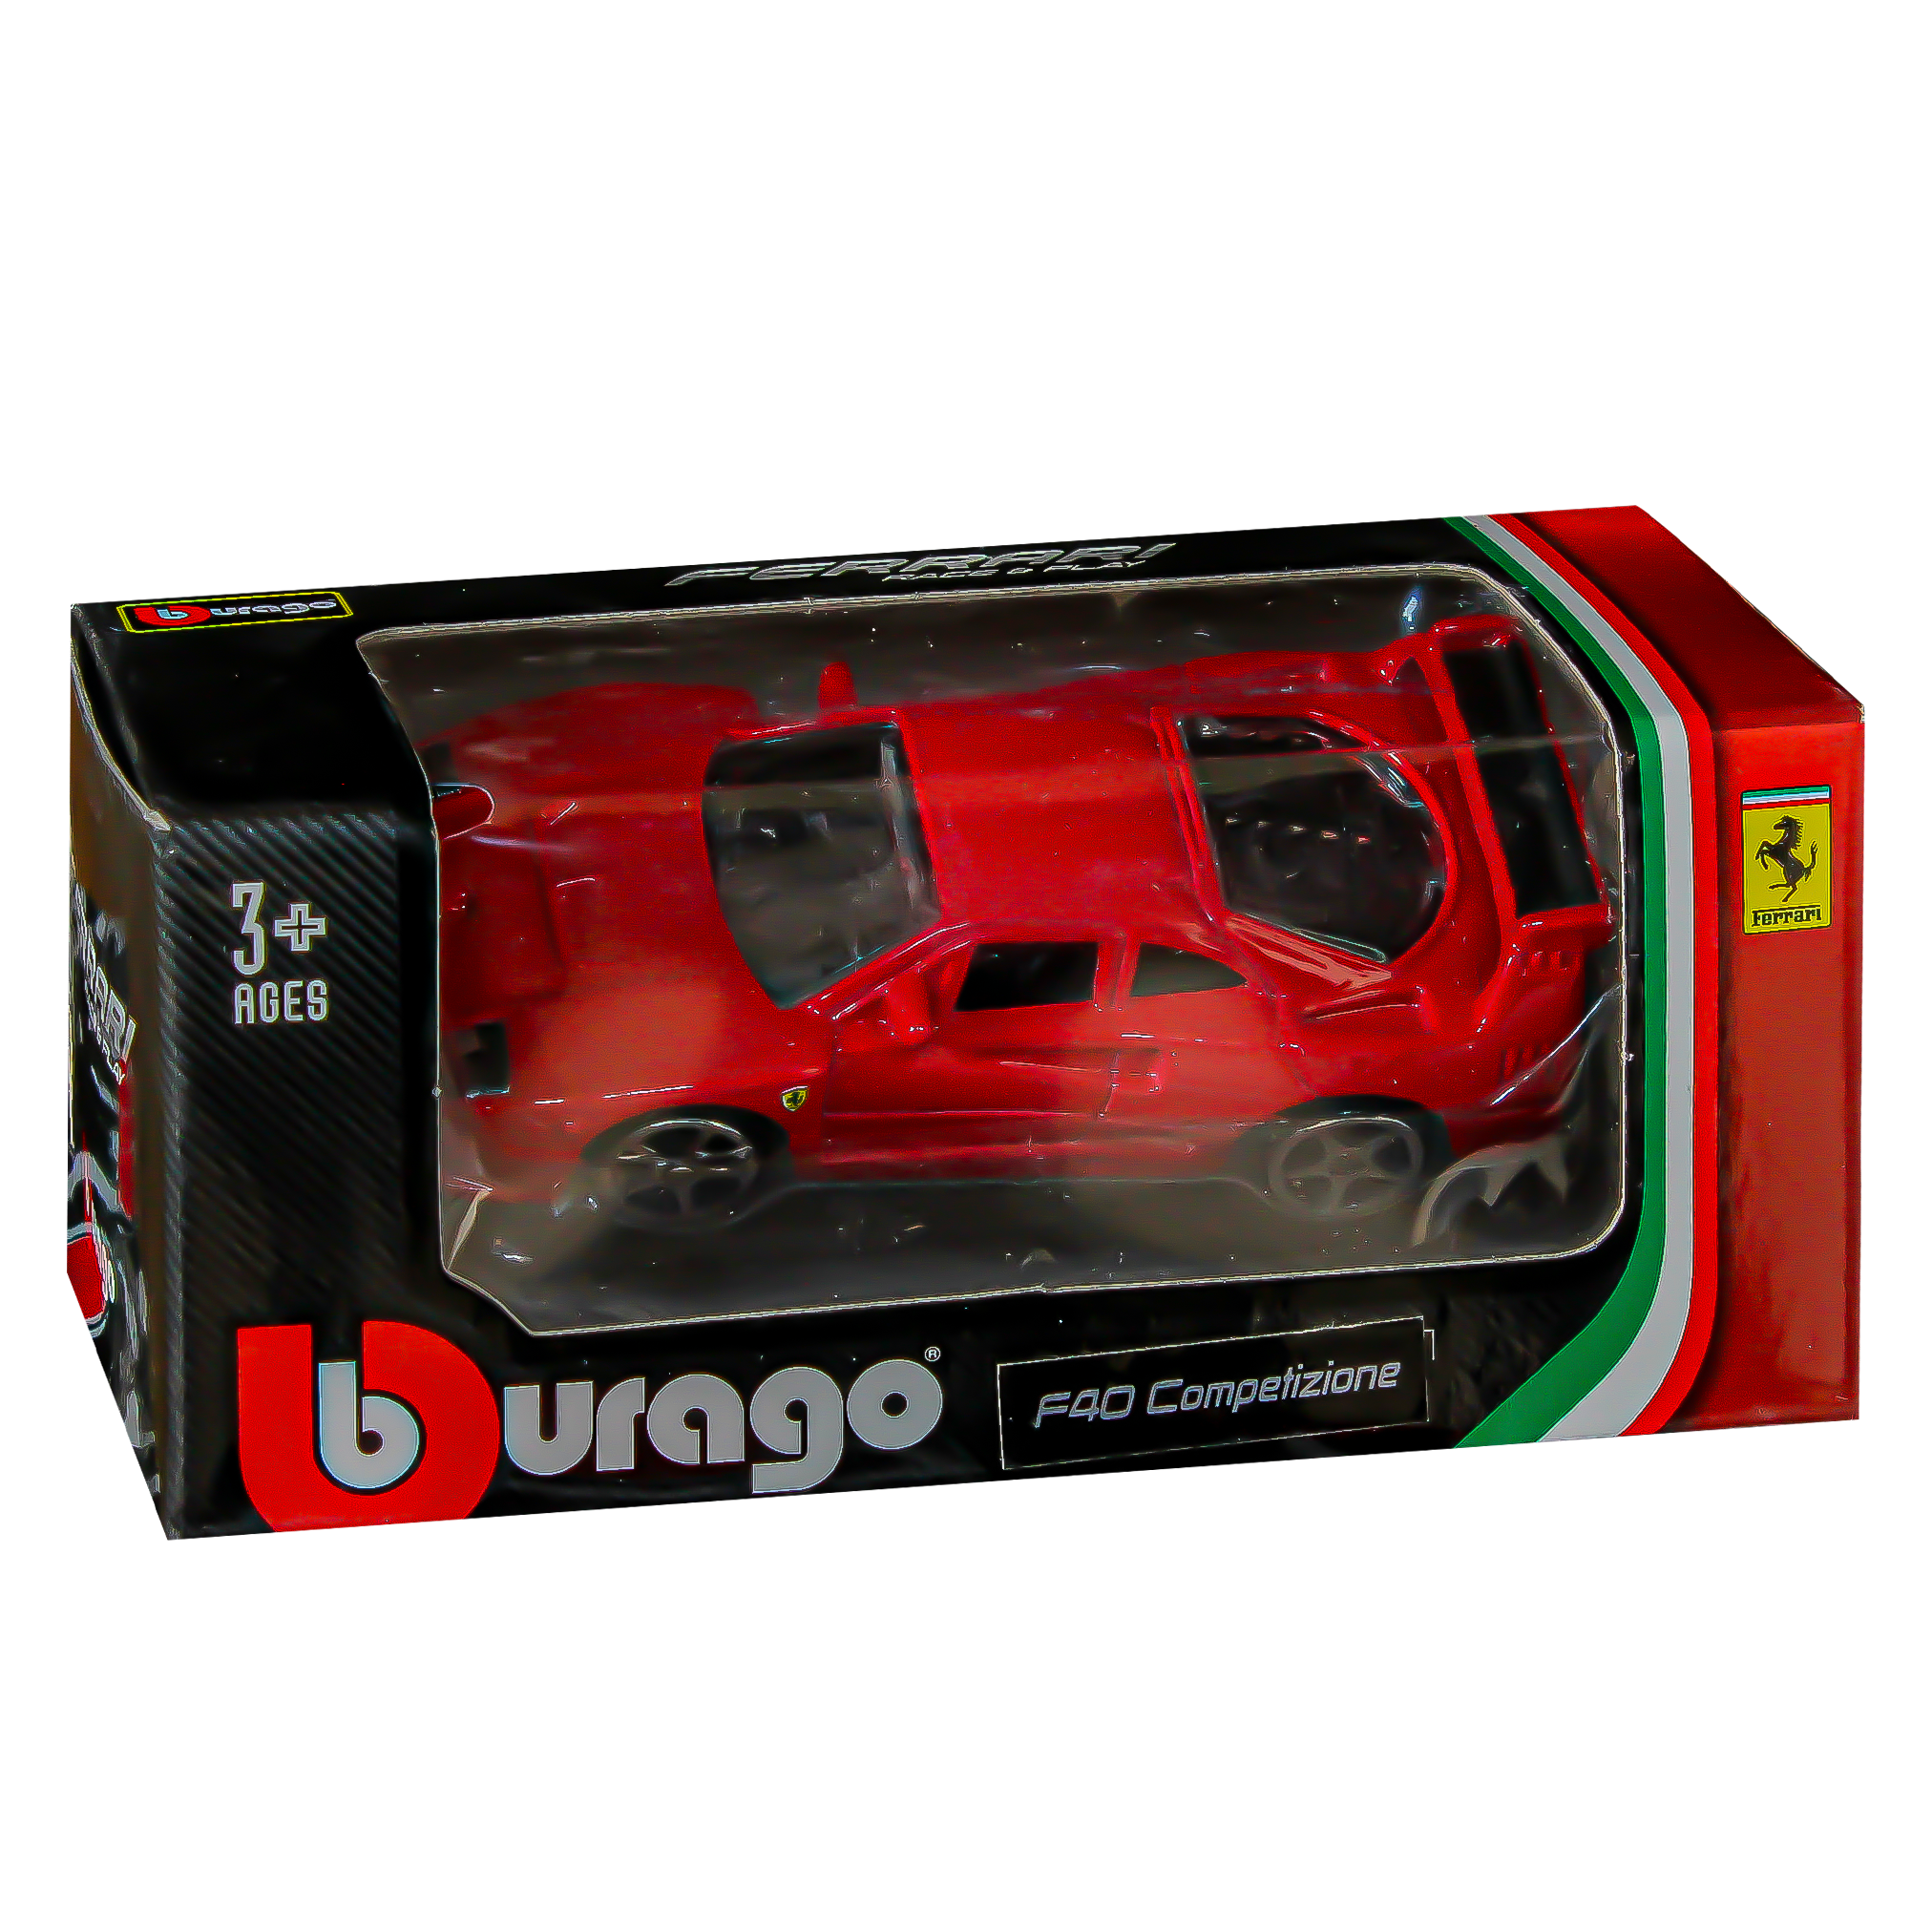 Burago Ferrari Race & Play Car - F40 Competizione